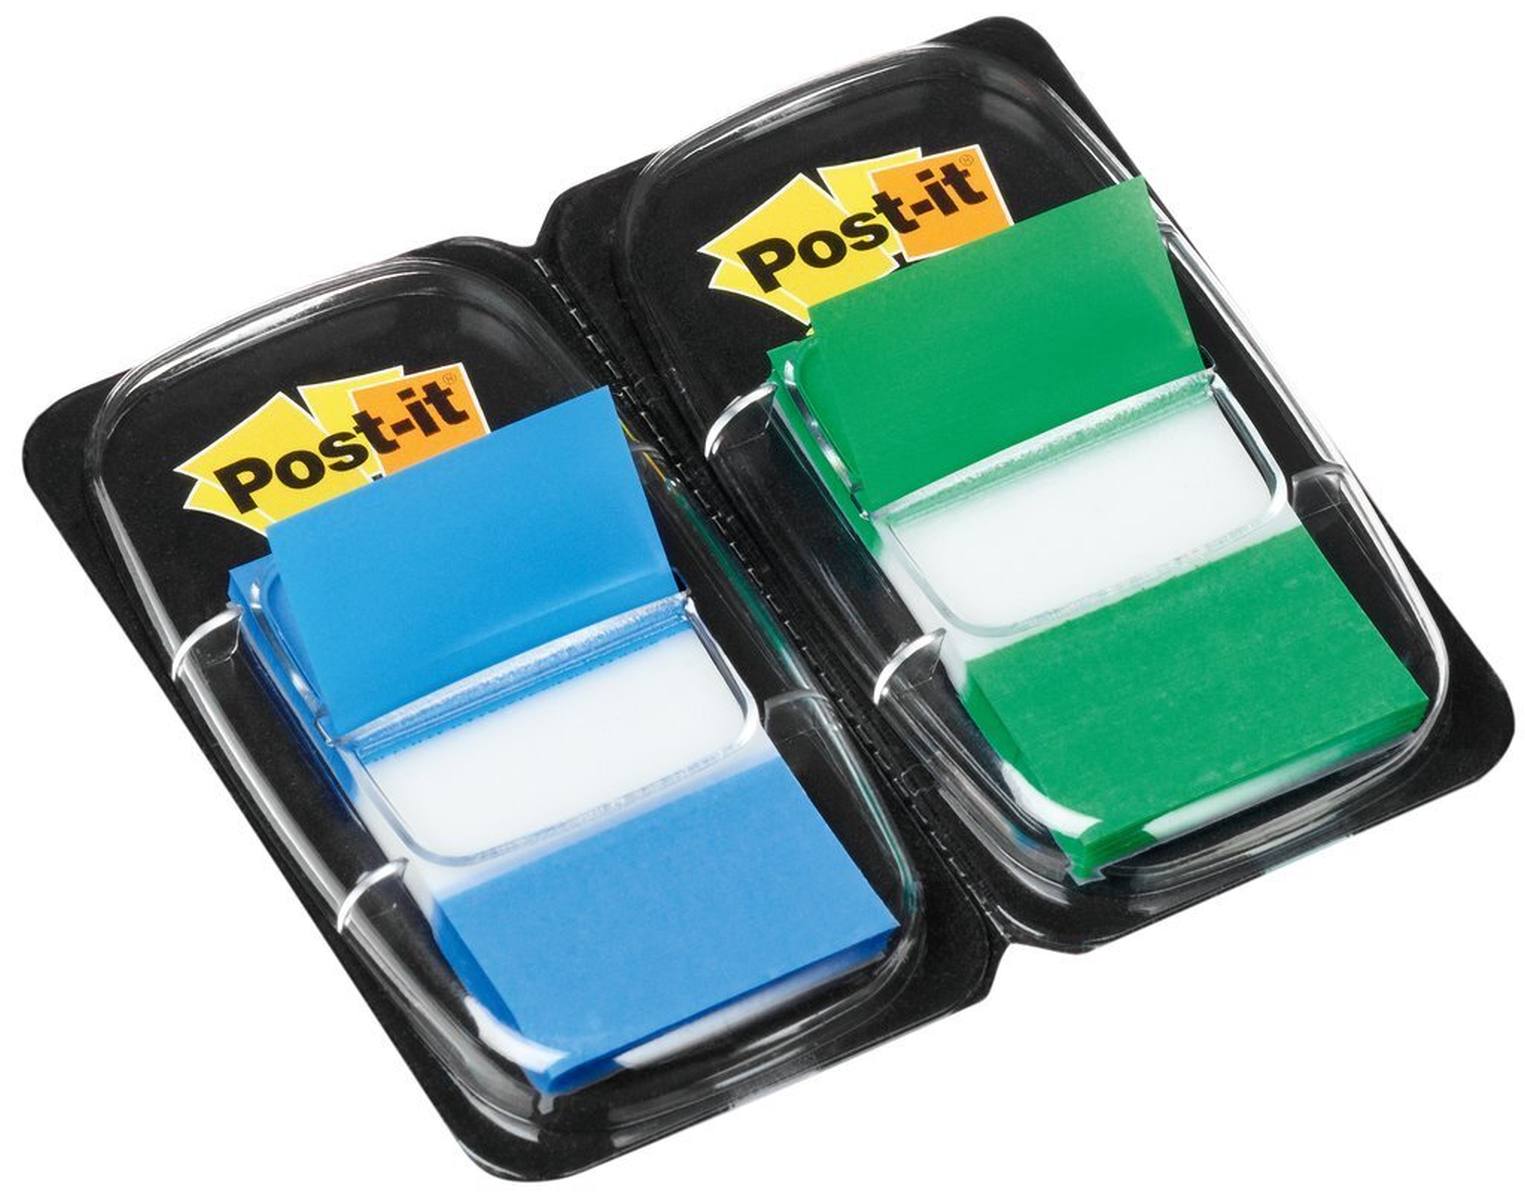 3M Post-it Index I680-GB2, 25,4 mm x 43,2 mm, azul, verde, 2 x 50 tiras adhesivas en dispensador